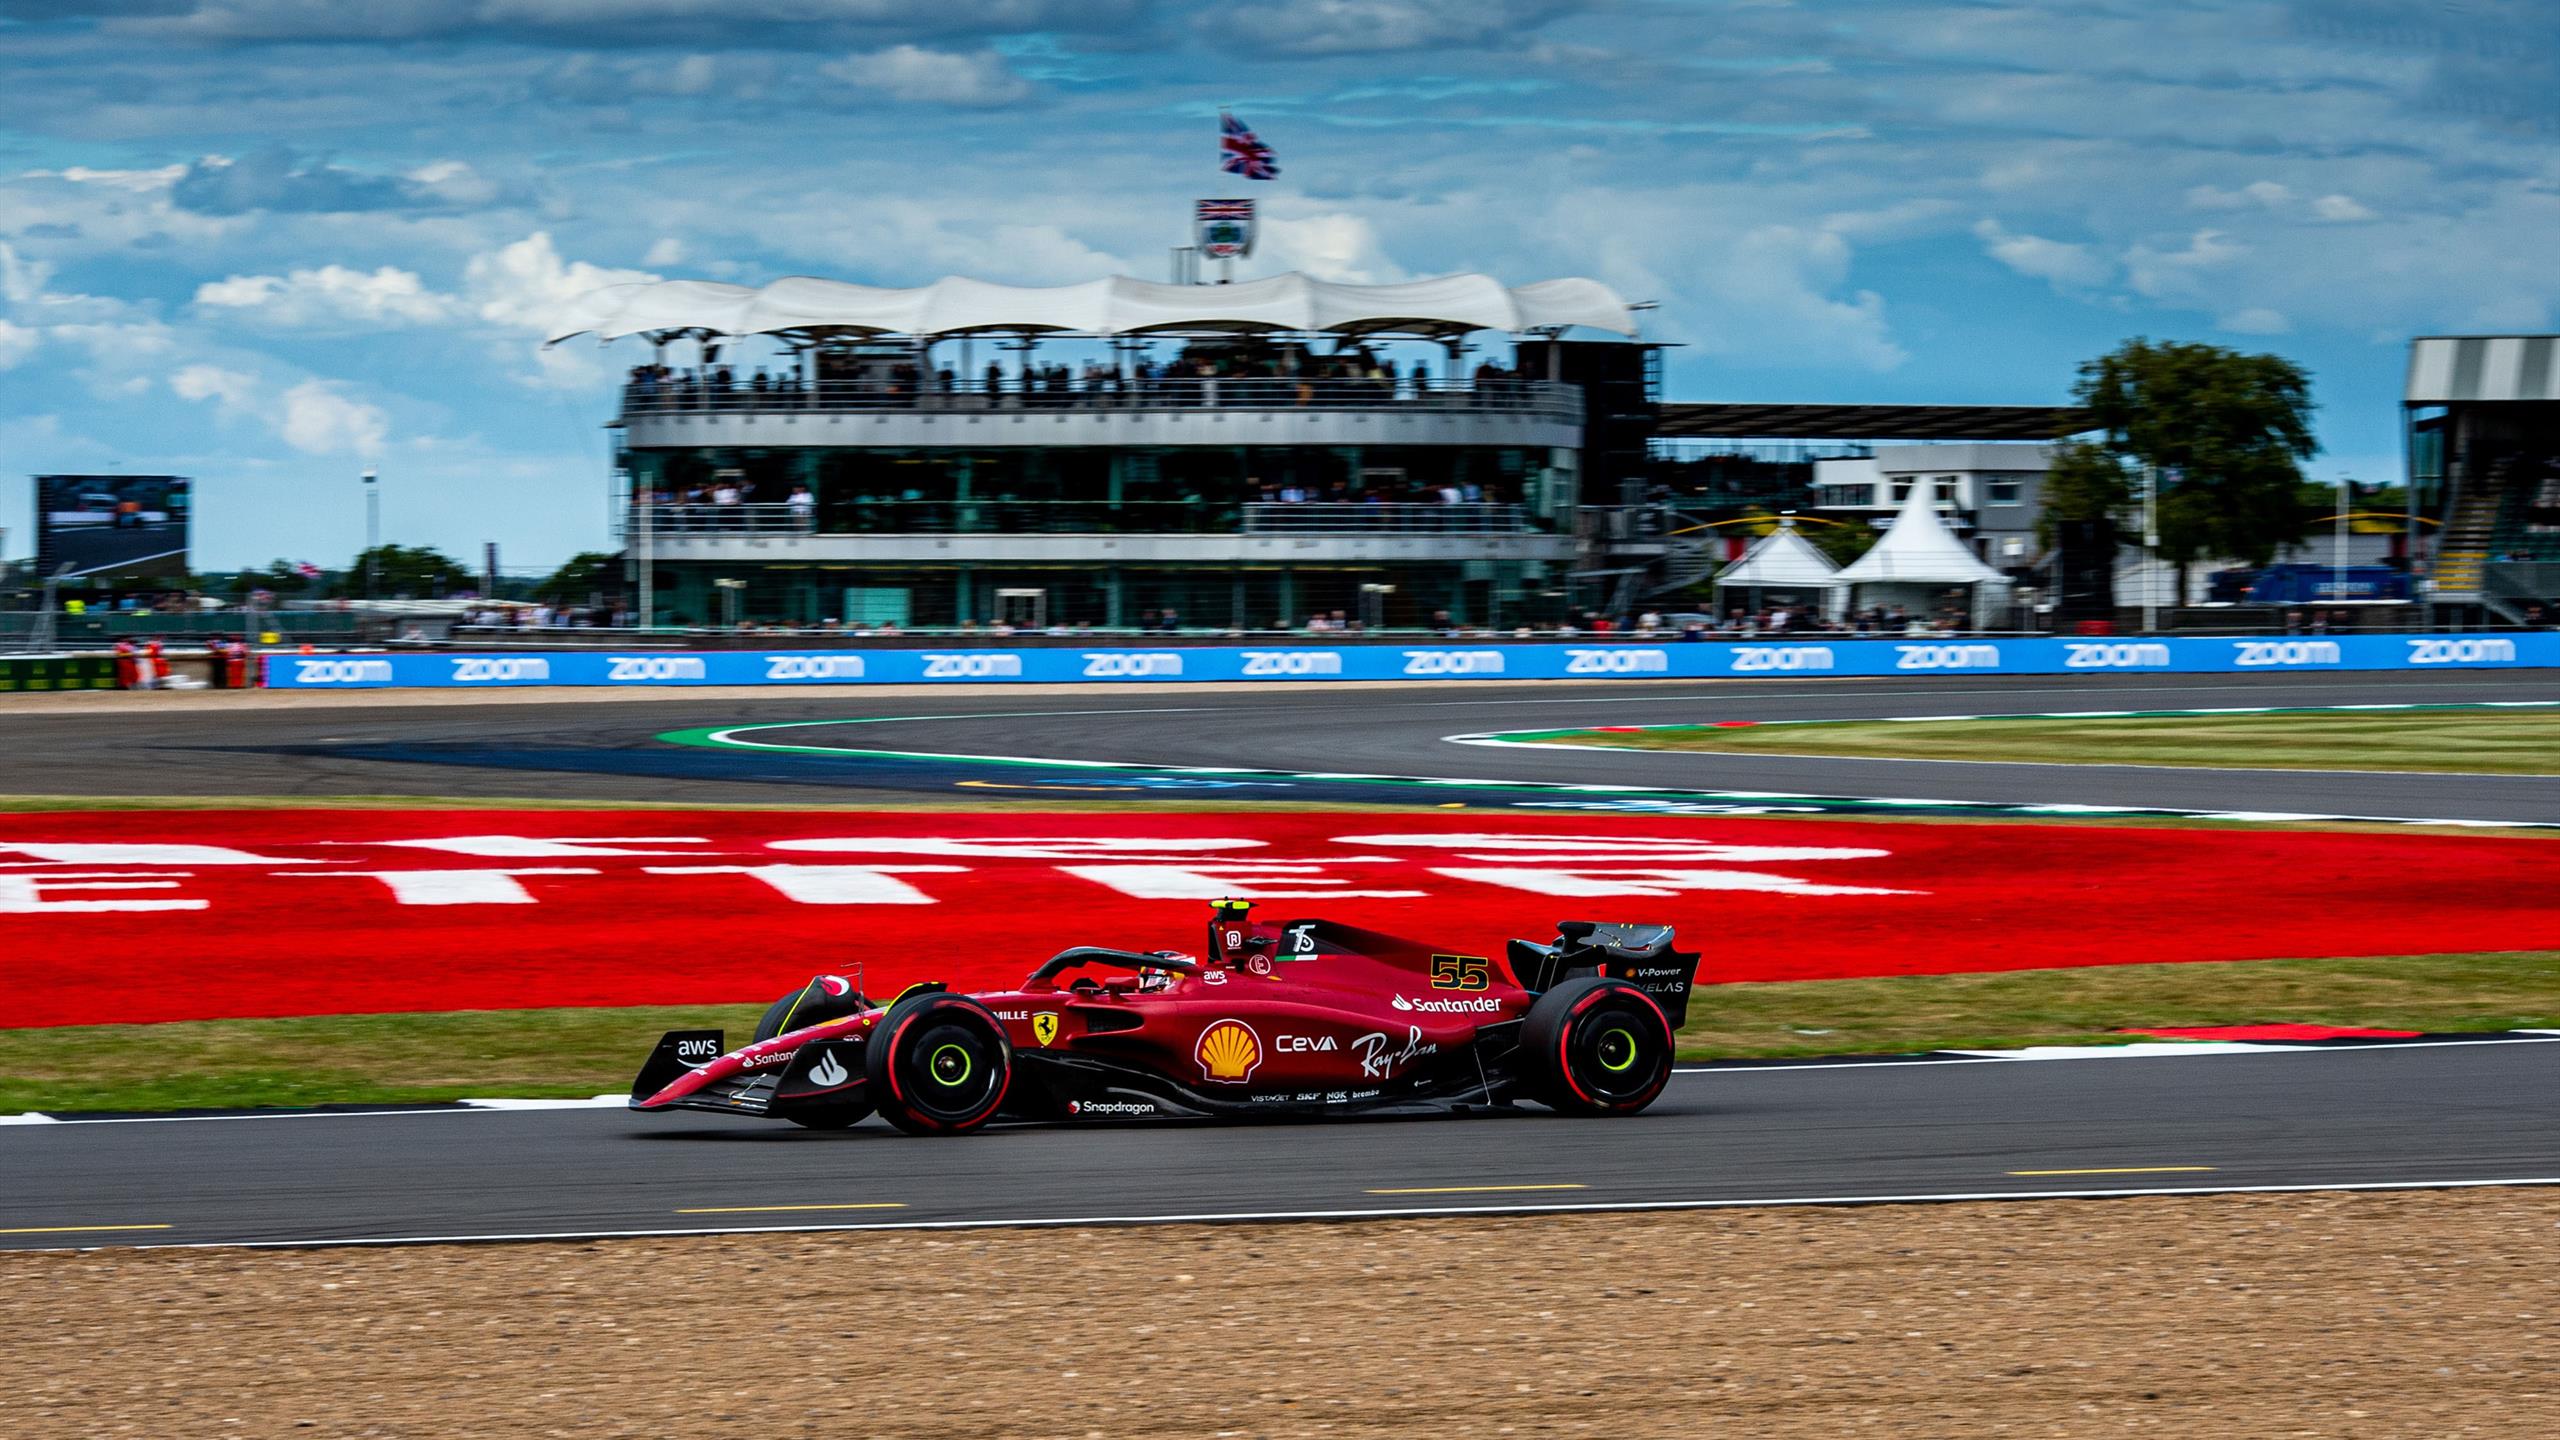 Formule 1 - GP de Grande-Bretagne - Poisse du nouveau poleman, Verstappen favori, Hamilton record : Le GP en questions - Eurosport FR